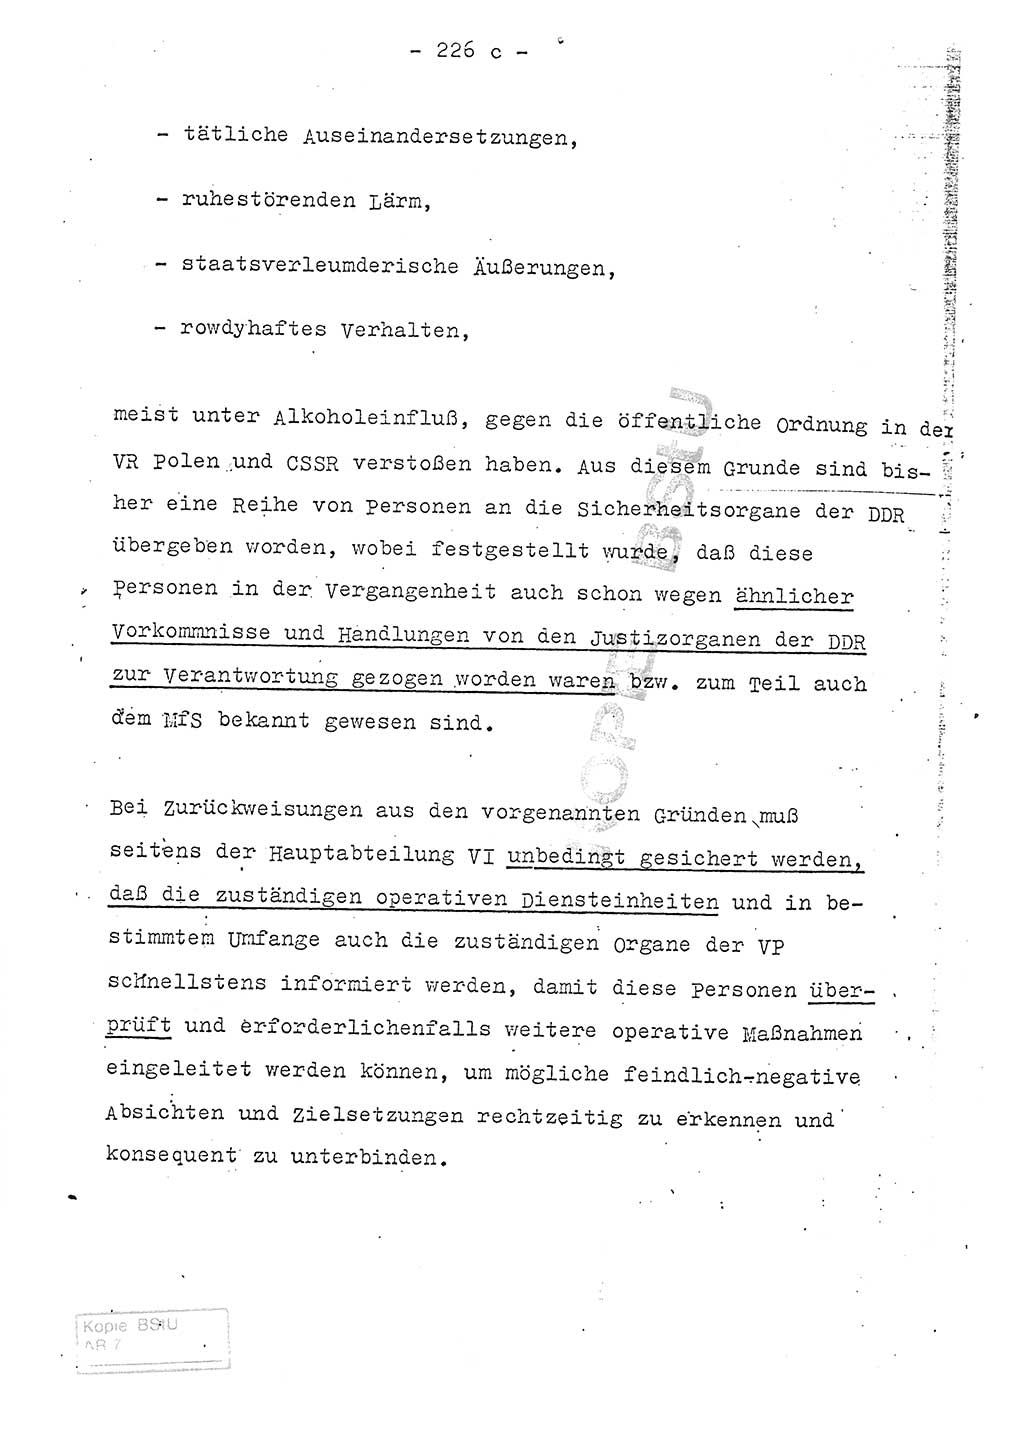 Referat (Entwurf) des Genossen Minister (Generaloberst Erich Mielke) auf der Dienstkonferenz 1972, Ministerium für Staatssicherheit (MfS) [Deutsche Demokratische Republik (DDR)], Der Minister, Geheime Verschlußsache (GVS) 008-150/72, Berlin 25.2.1972, Seite 226/3 (Ref. Entw. DK MfS DDR Min. GVS 008-150/72 1972, S. 226/3)